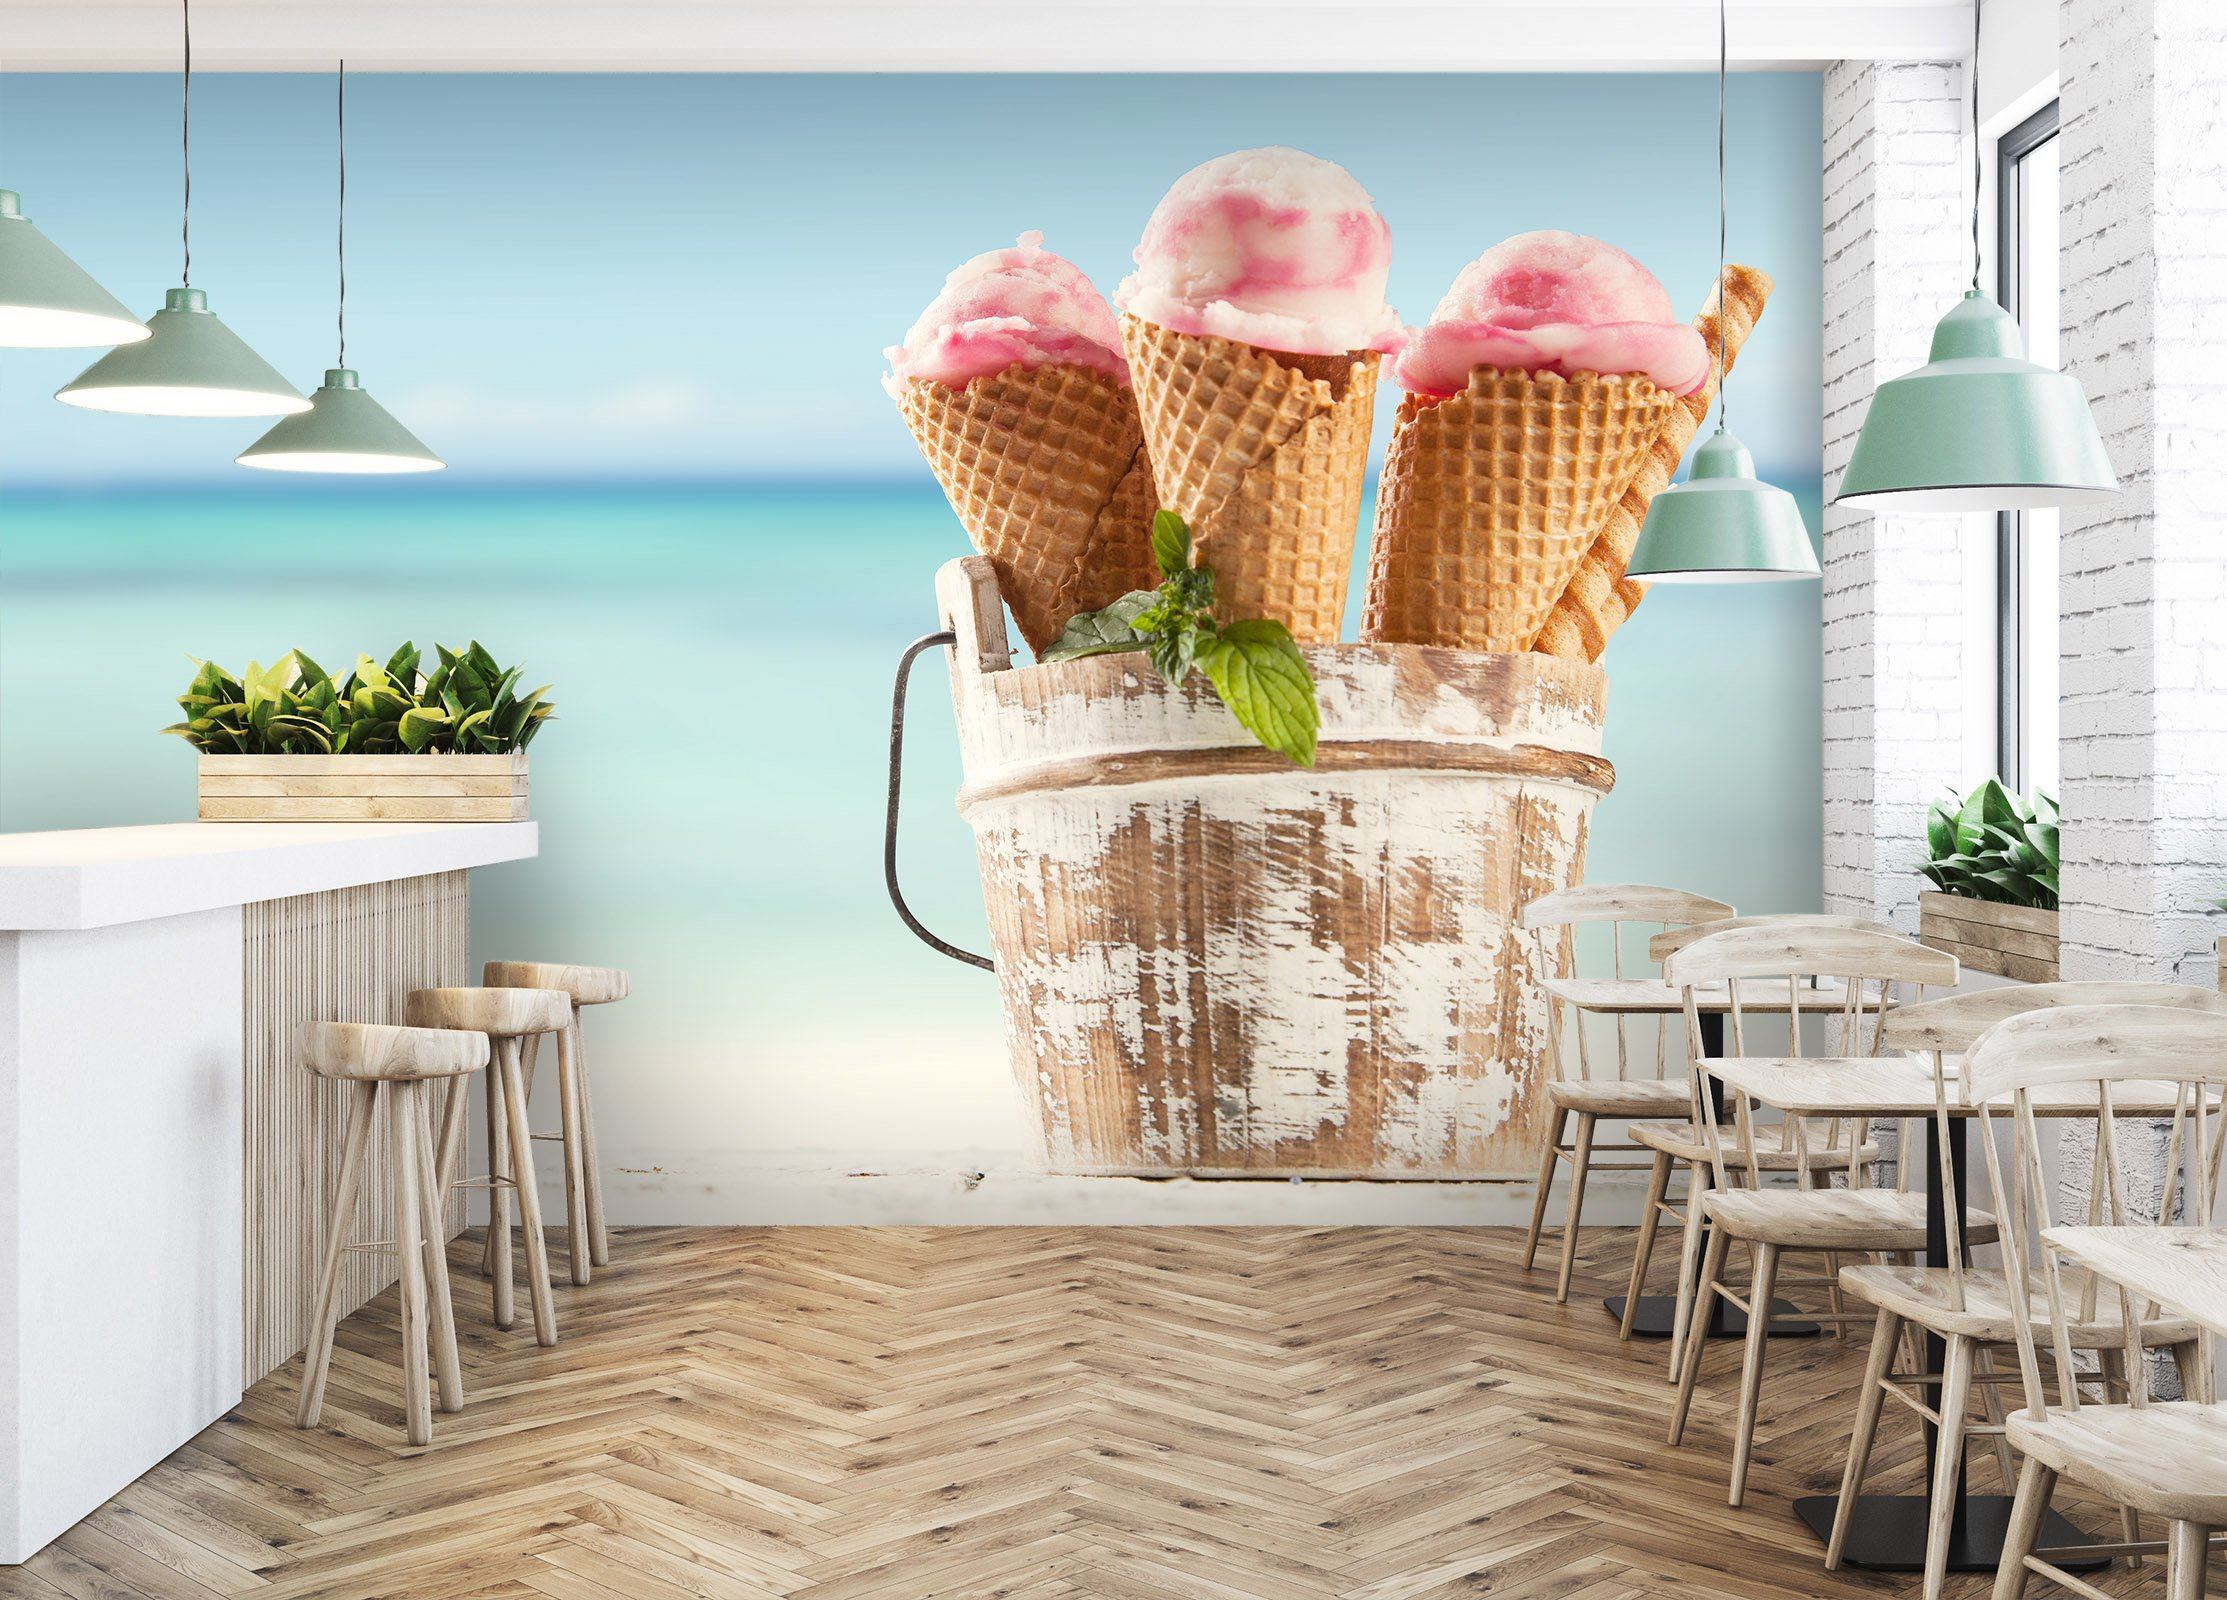 3D Wooden Barrel Ice Cream 4343 Wallpaper AJ Wallpaper 2 